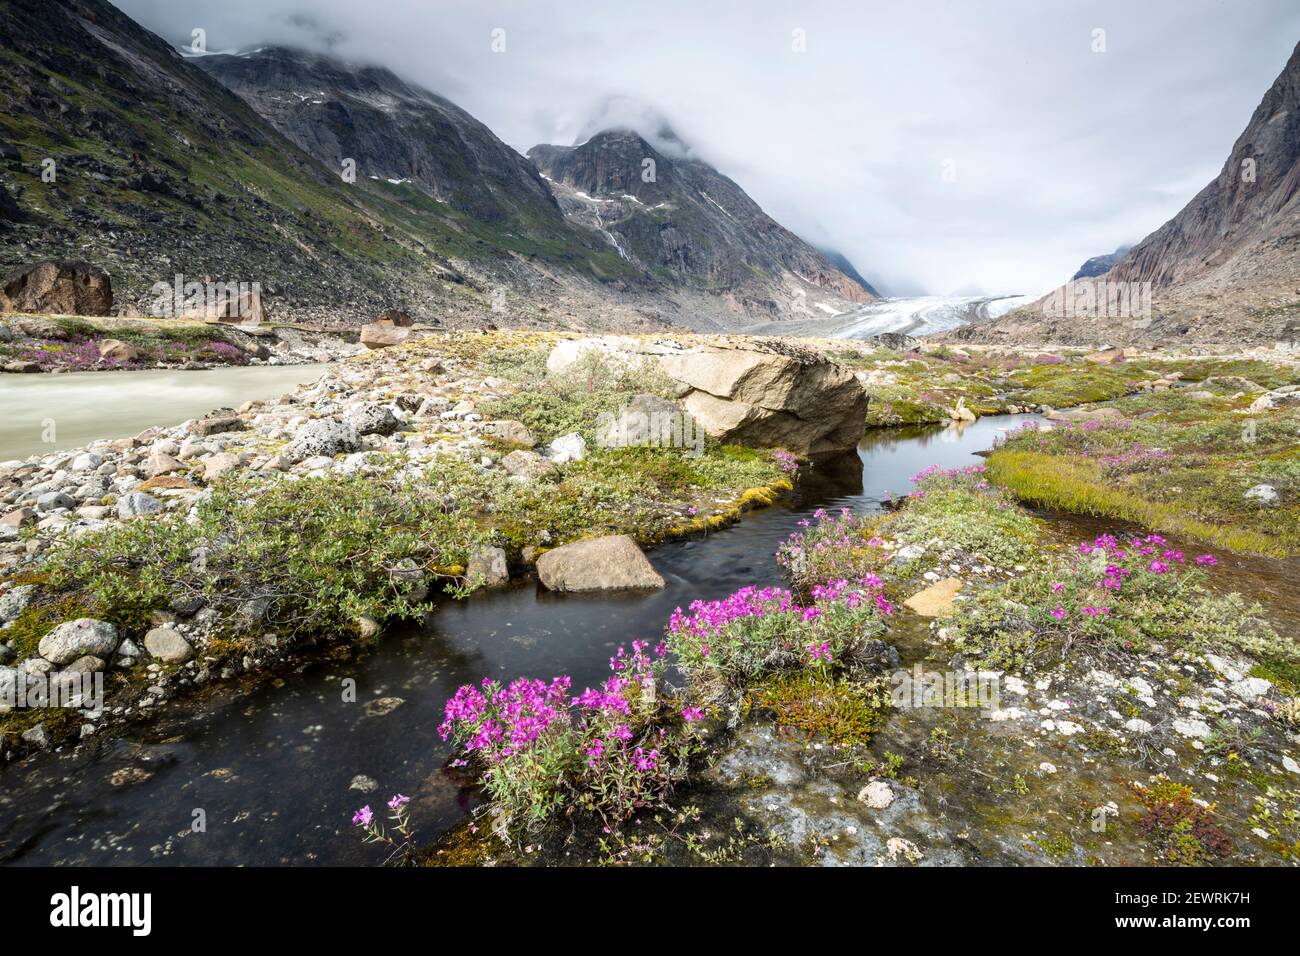 Les beautés de la rivière (pompier nain) bordent le bord d'une rivière d'eau de fusion du glacier Igdlorssuit, Prins Christian Sund, Groenland, régions polaires Banque D'Images